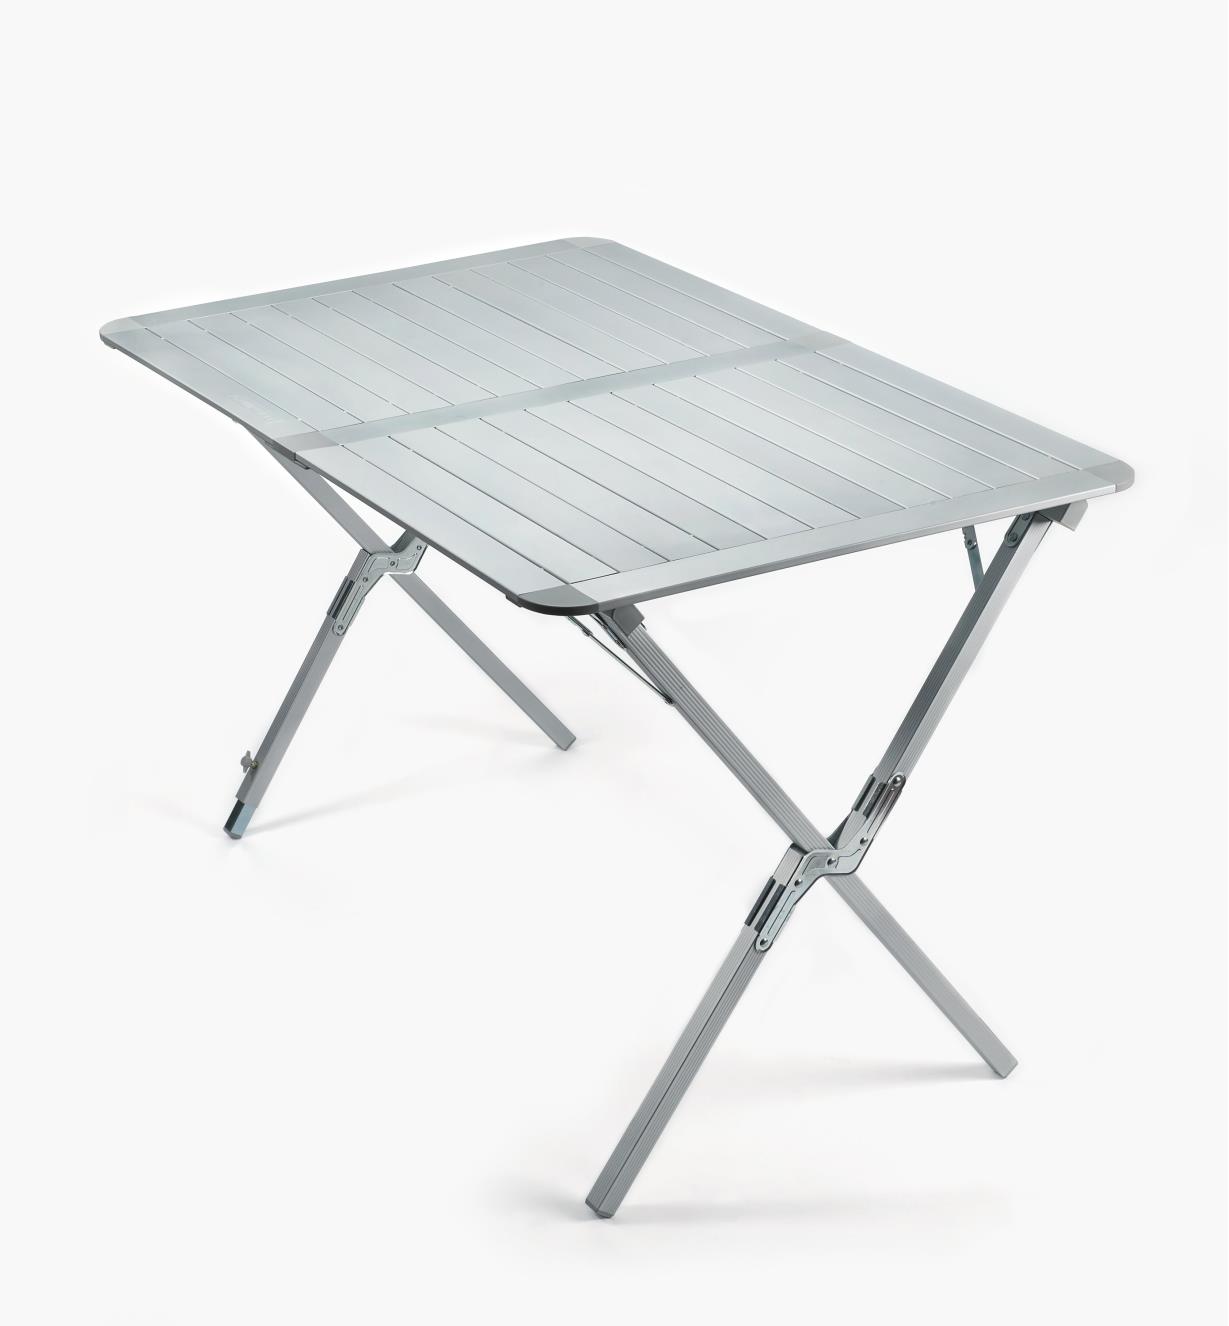 XJ265 - Table pliante en aluminium